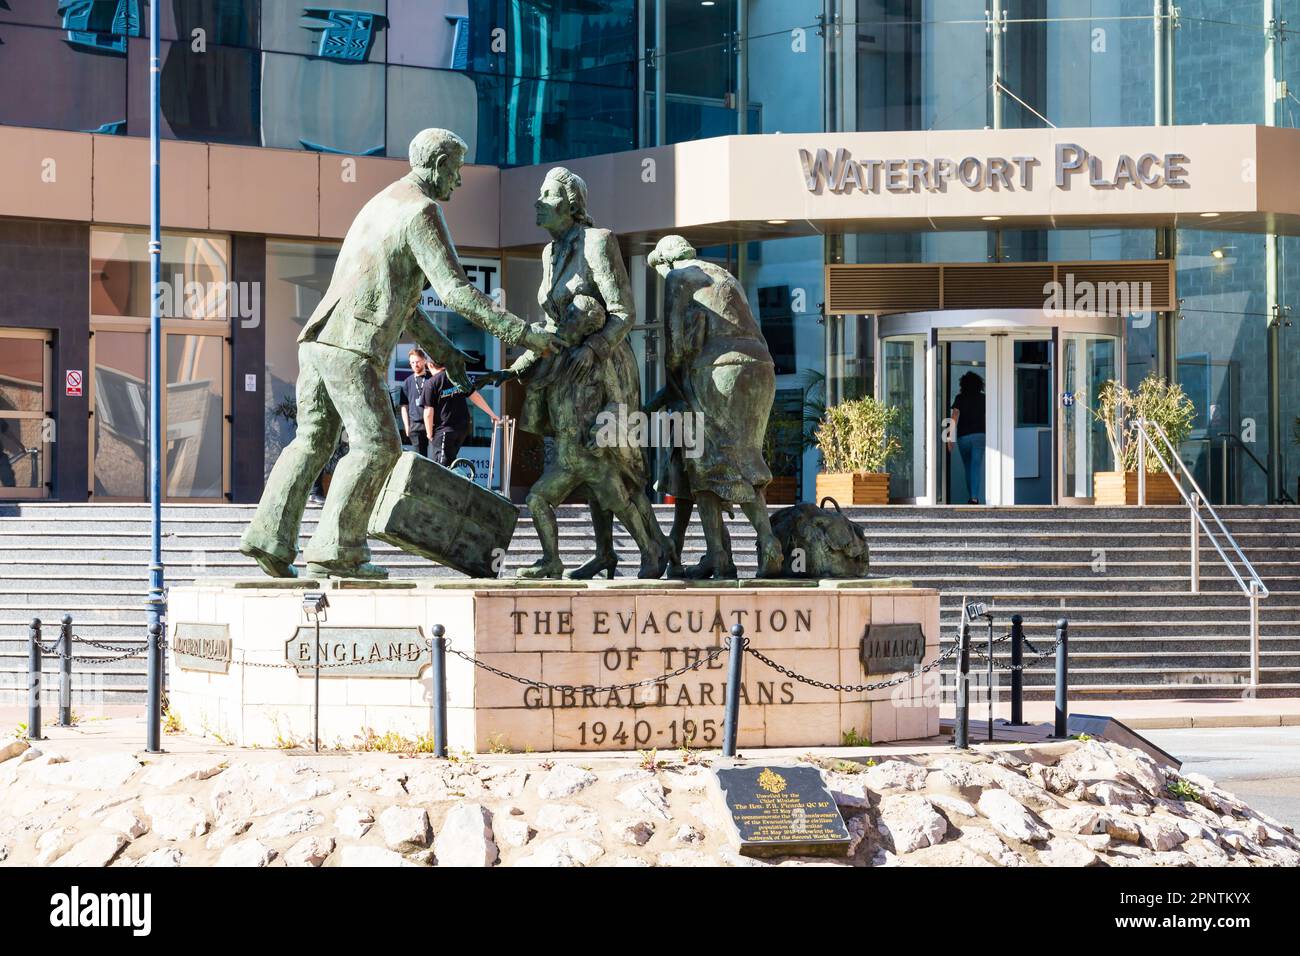 Evakuierung der Bronzestatue der Gibraltarier durch Jill Cowie Sanders. Kreisverkehr North Mole Road. Vor dem Waterport Place Gebäude. Die British Ove Stockfoto